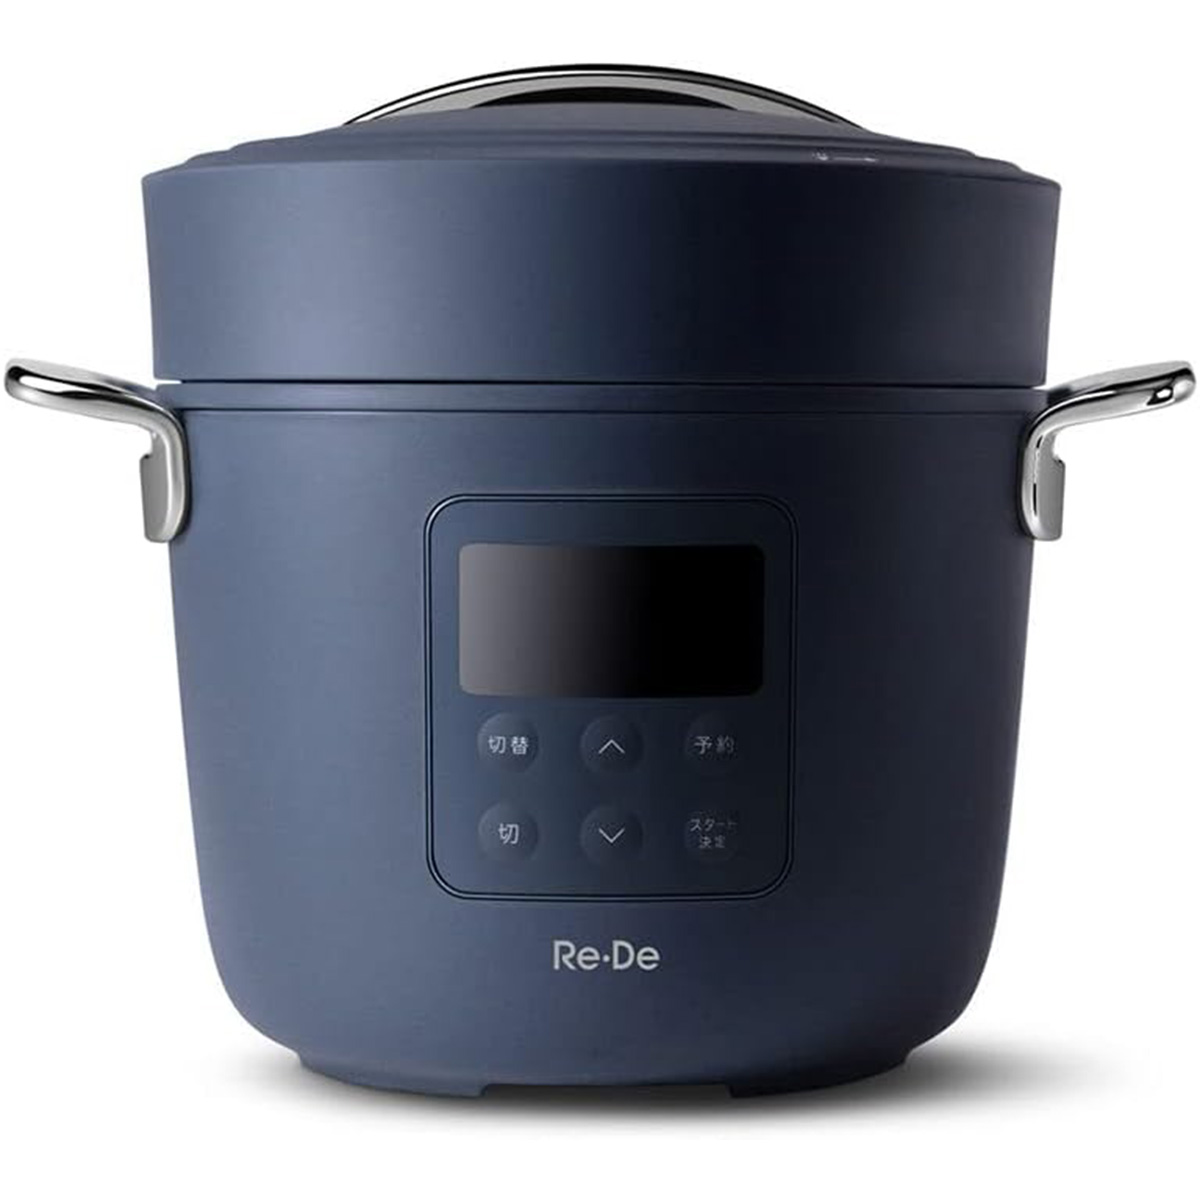 【5年保証付】Re・De Pot リデポット 電気圧力鍋 2L レシピブック付き 無水調理 炊飯 おしゃれ ネイビー